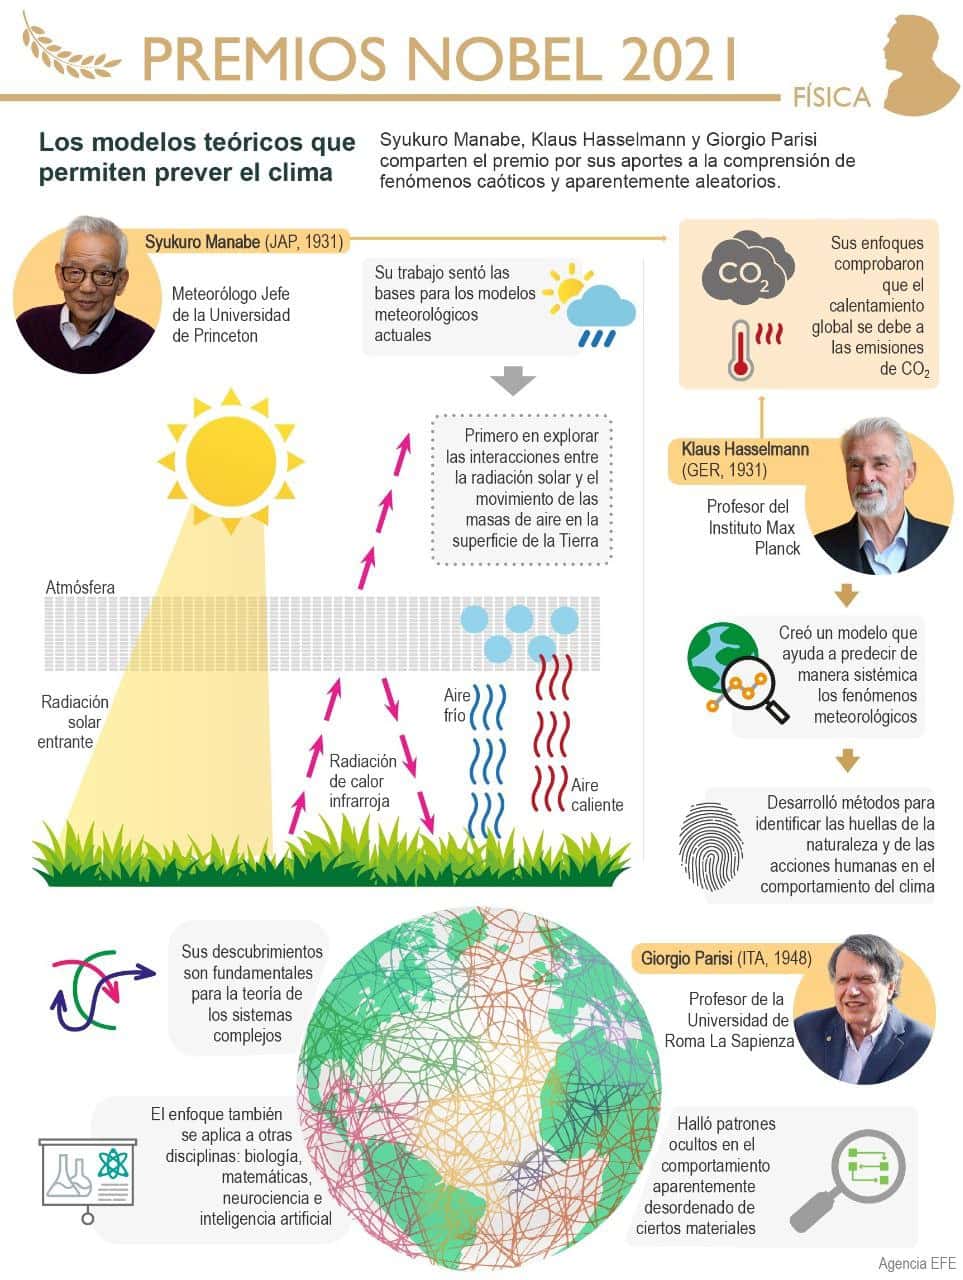 [Infografía] Nobel para la ciencia de los sistemas complejos que ayudan a prever el clima 1